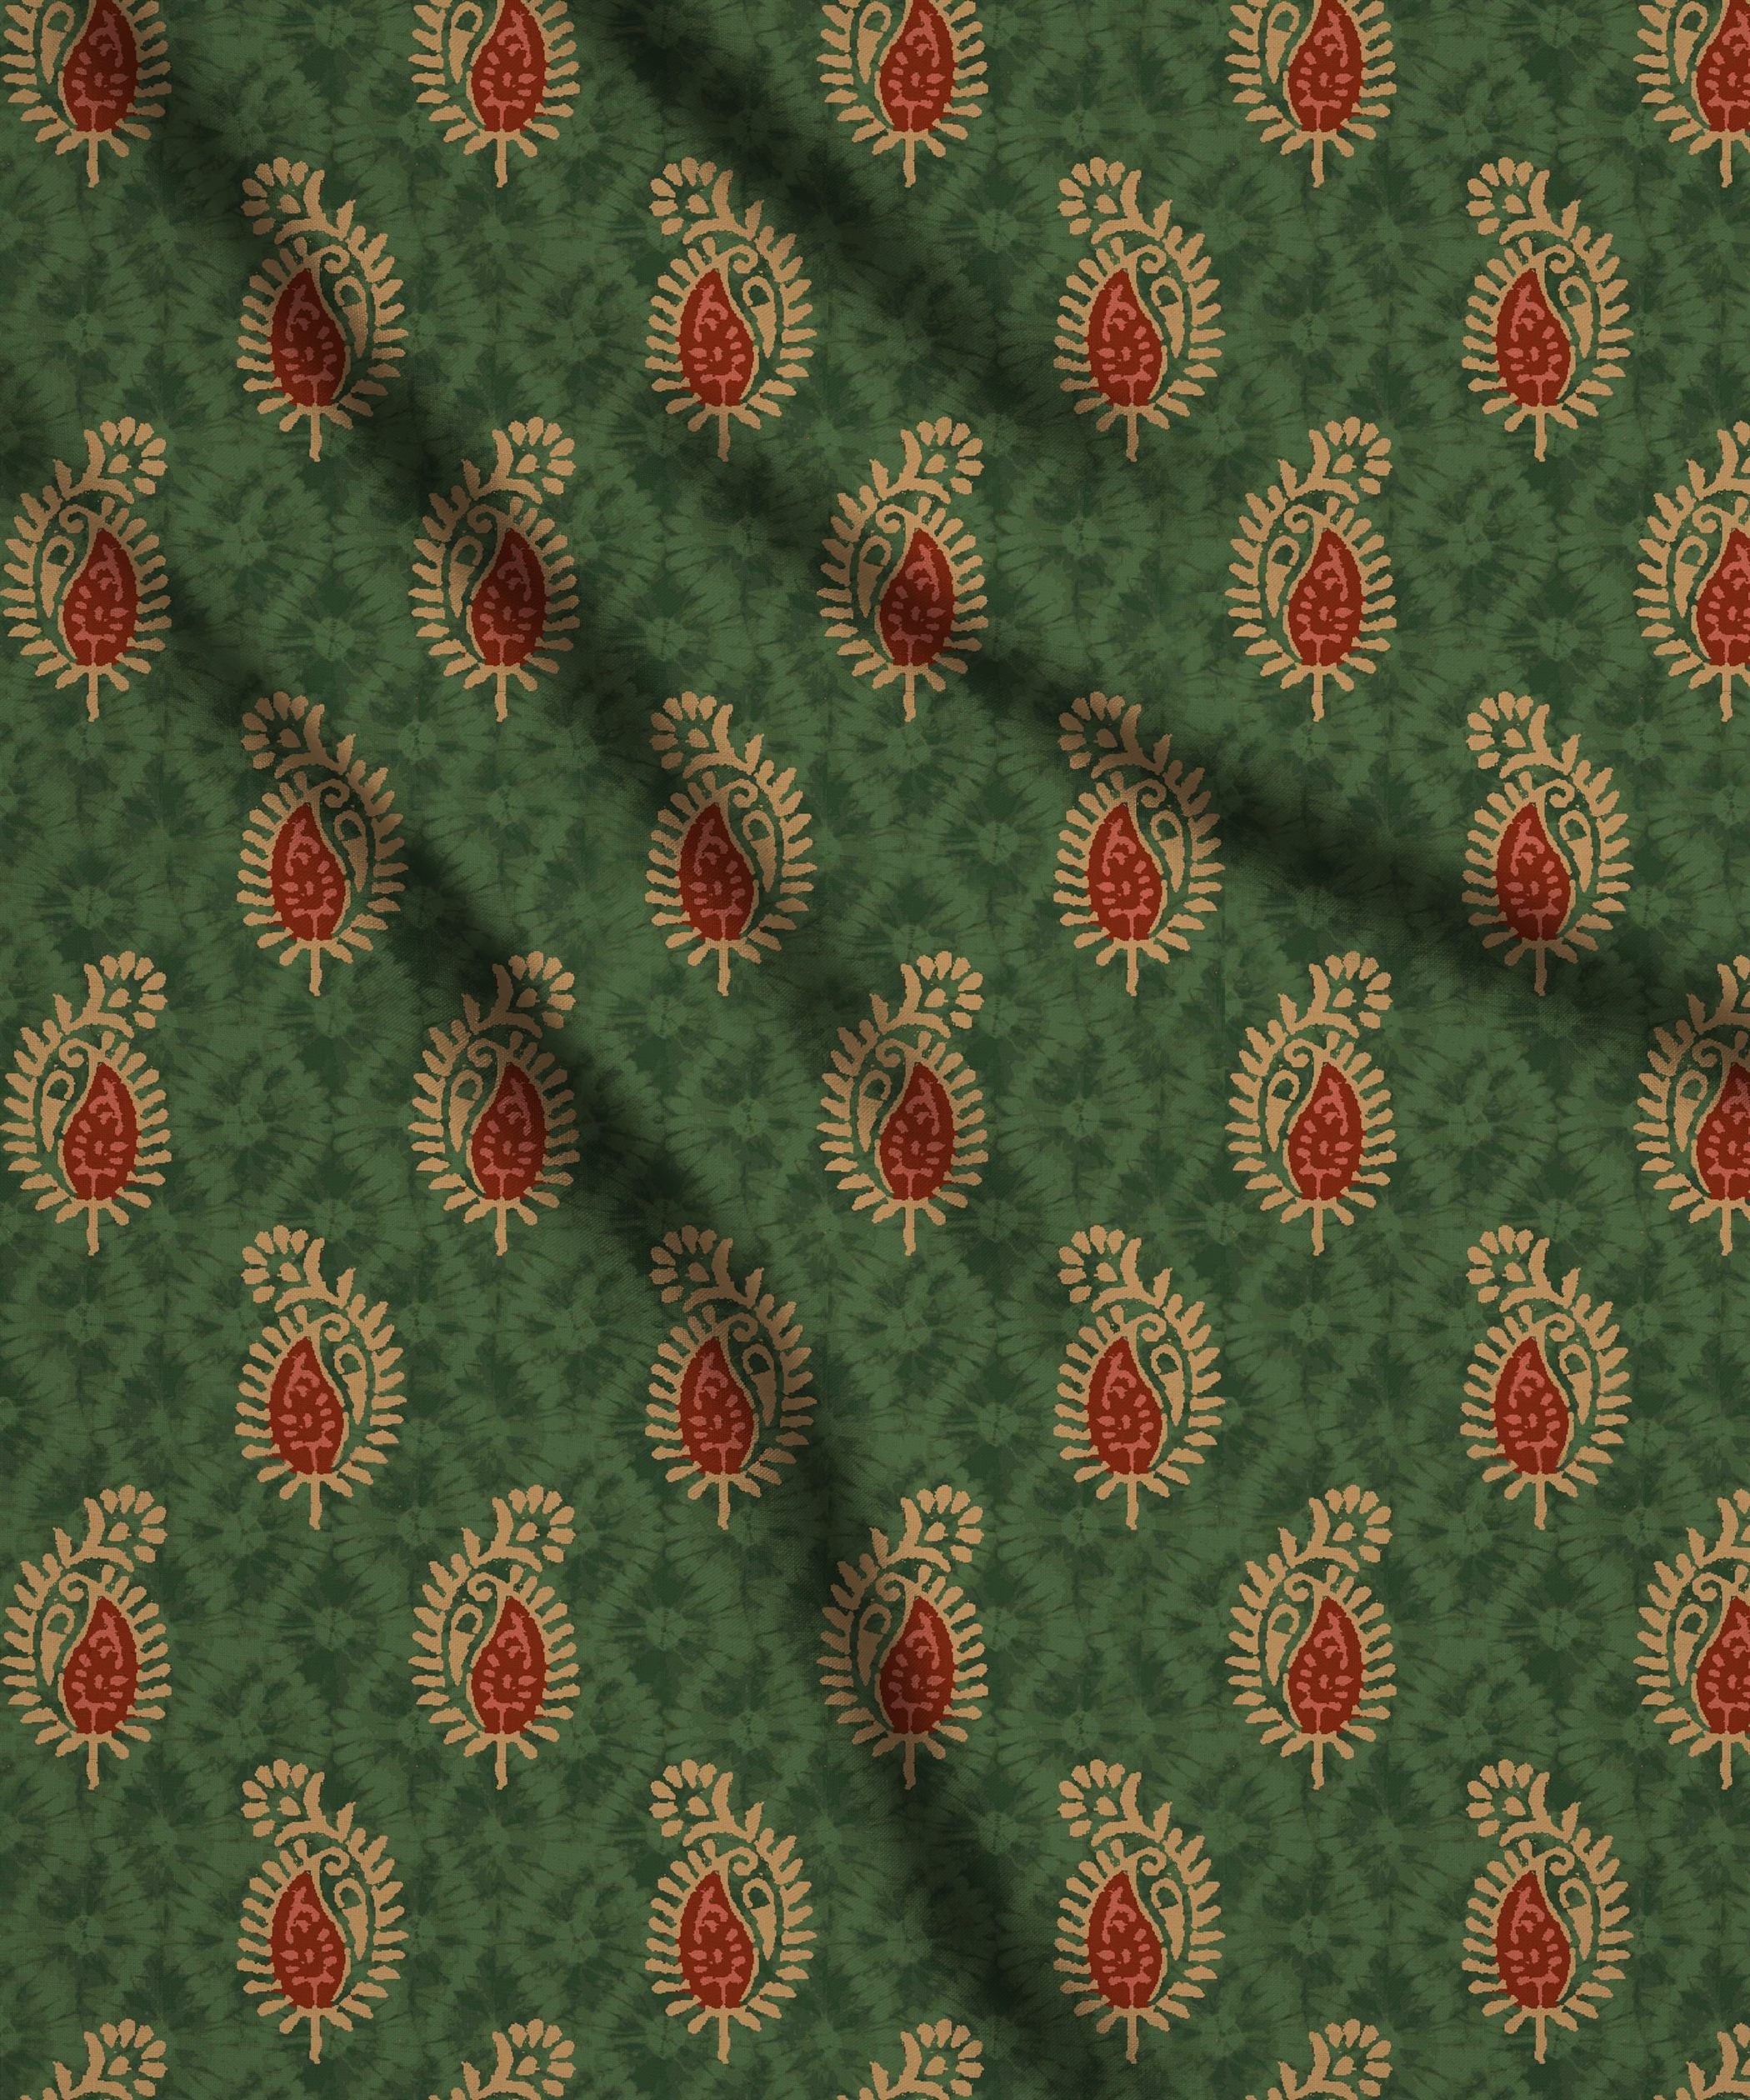 Green-Shibori with Batik Print